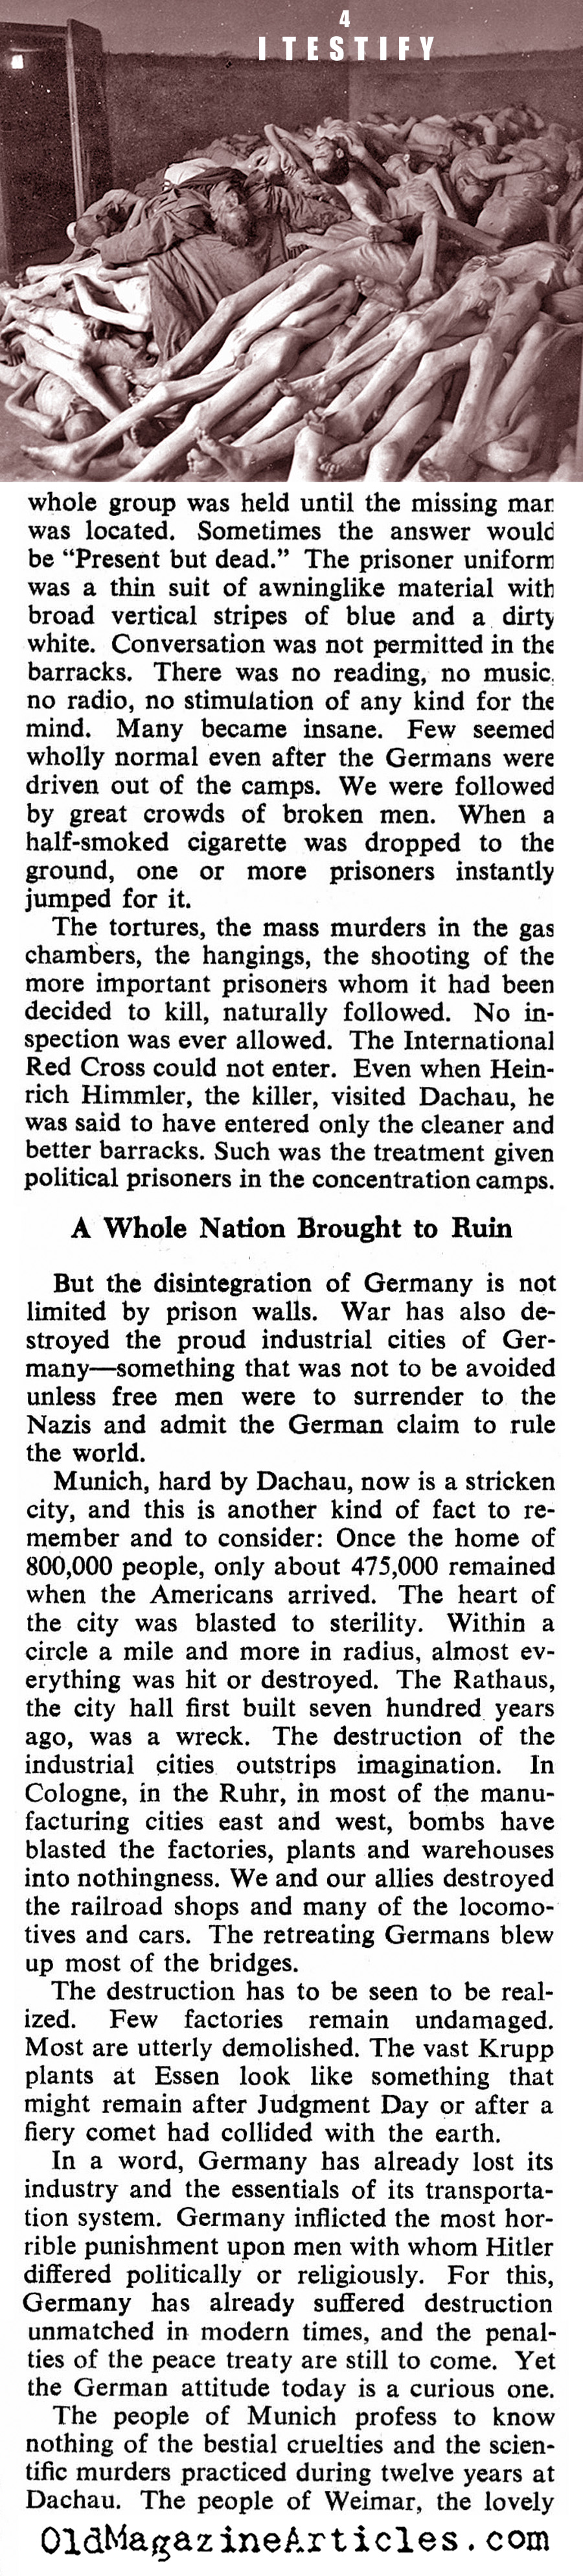 Testimony (Collier's Magazine, 1945)